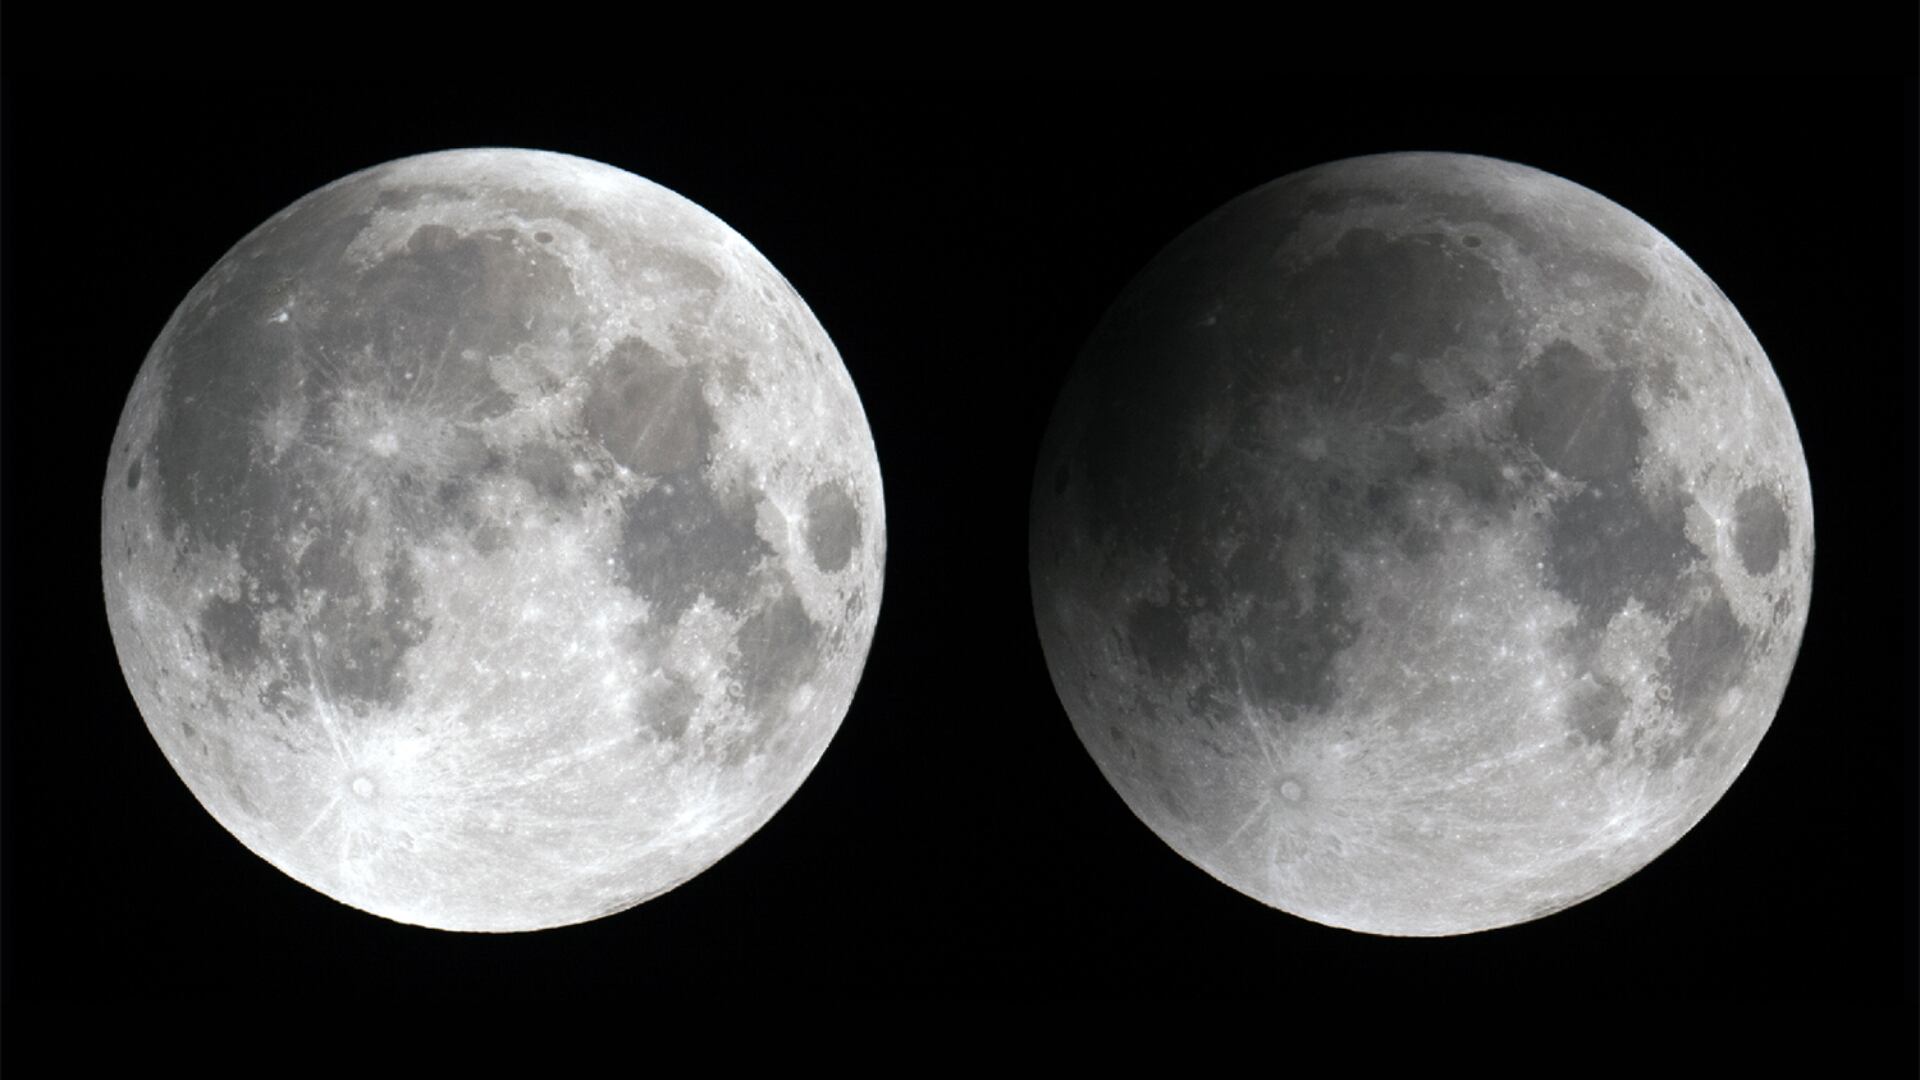 Fotografías de antes y después de que la Luna entró en la penumbra de la Tierra, lo que produce este sutil eclipse.